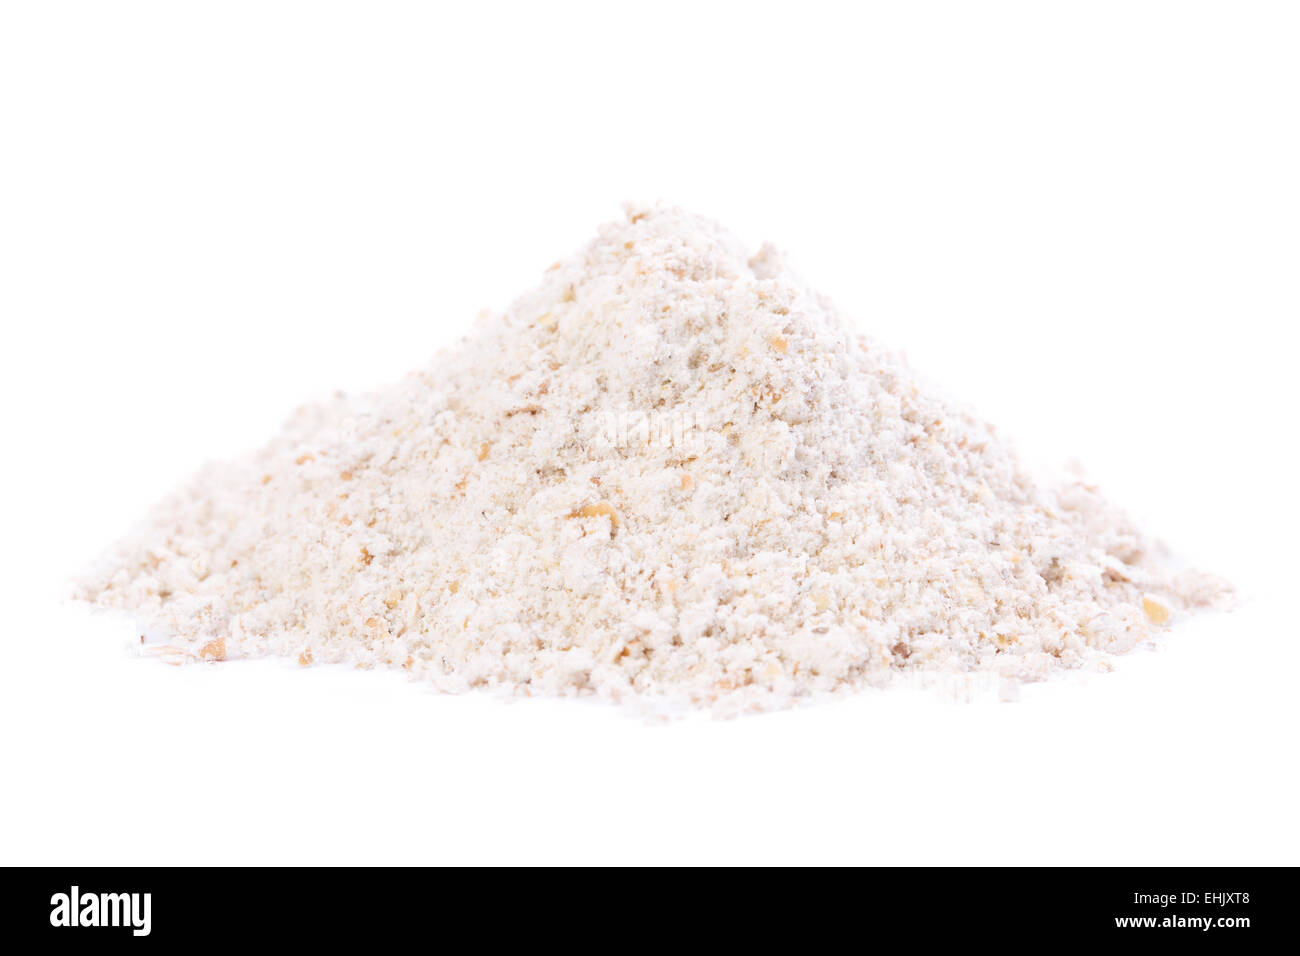 Organic Whole Grain Flour in a heap. Stock Photo